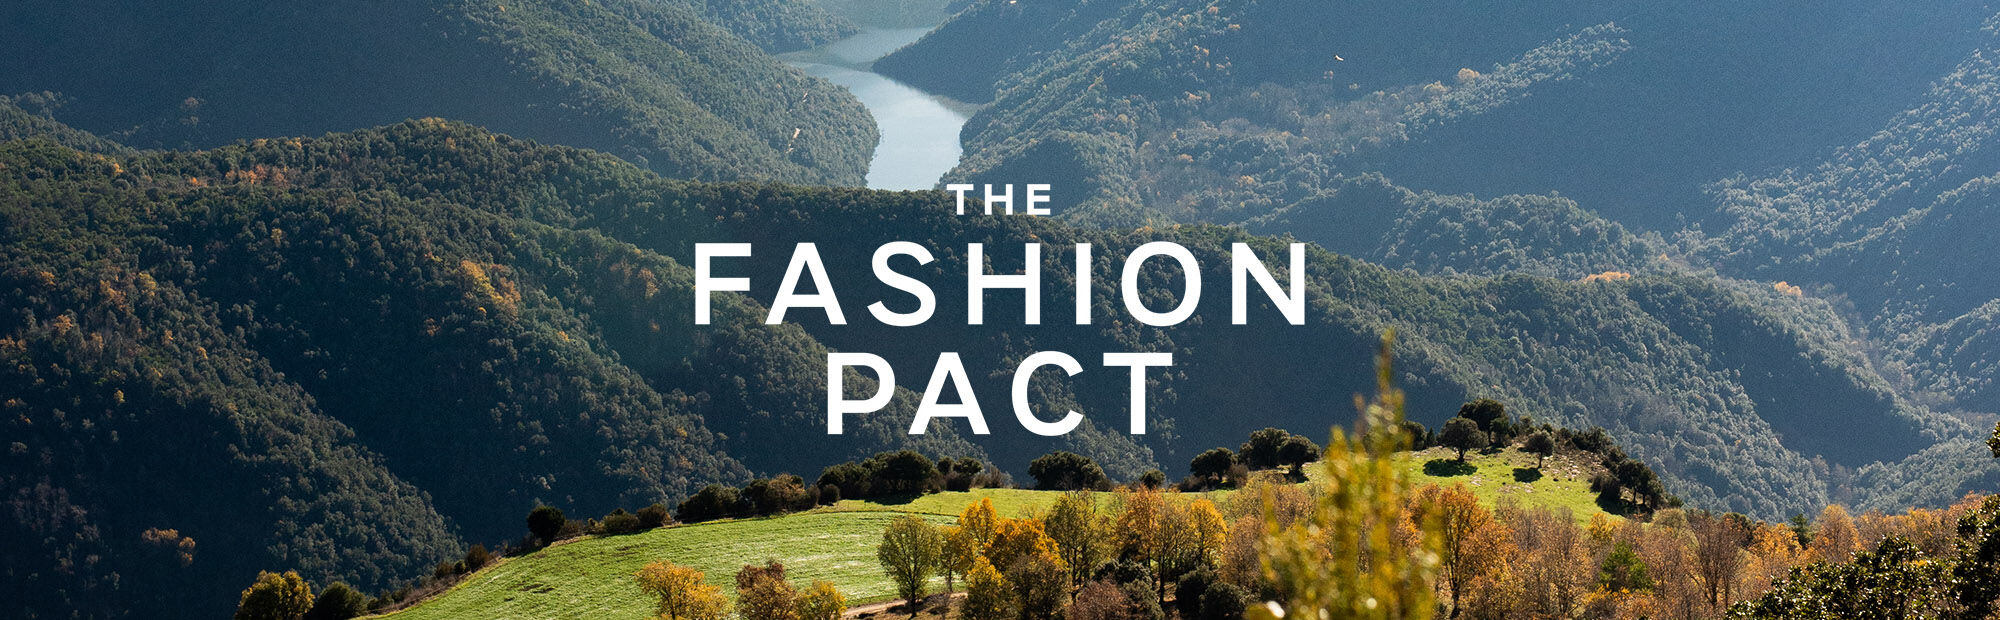 Desigual se une a The Fashion Pact y se marca nuevos objetivos de sostenibilidad